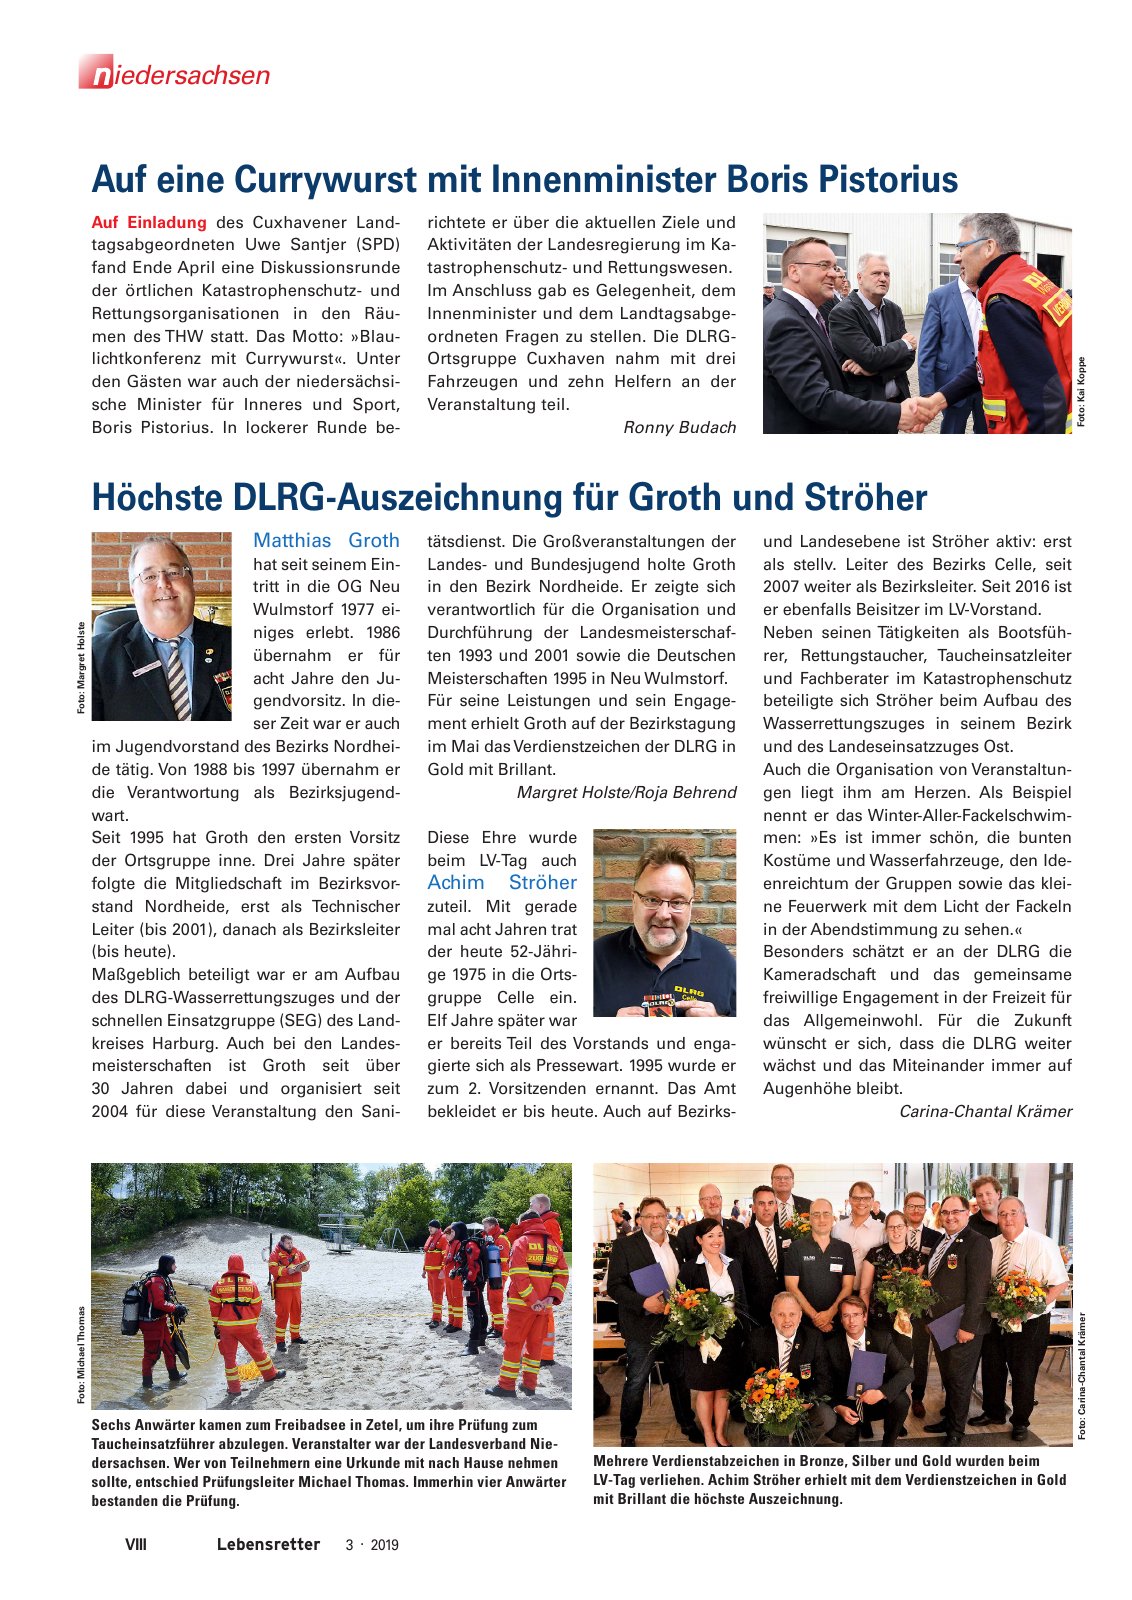 Vorschau Lebensretter 3/2019 - Niedersachsen Regionalausgabe Seite 10